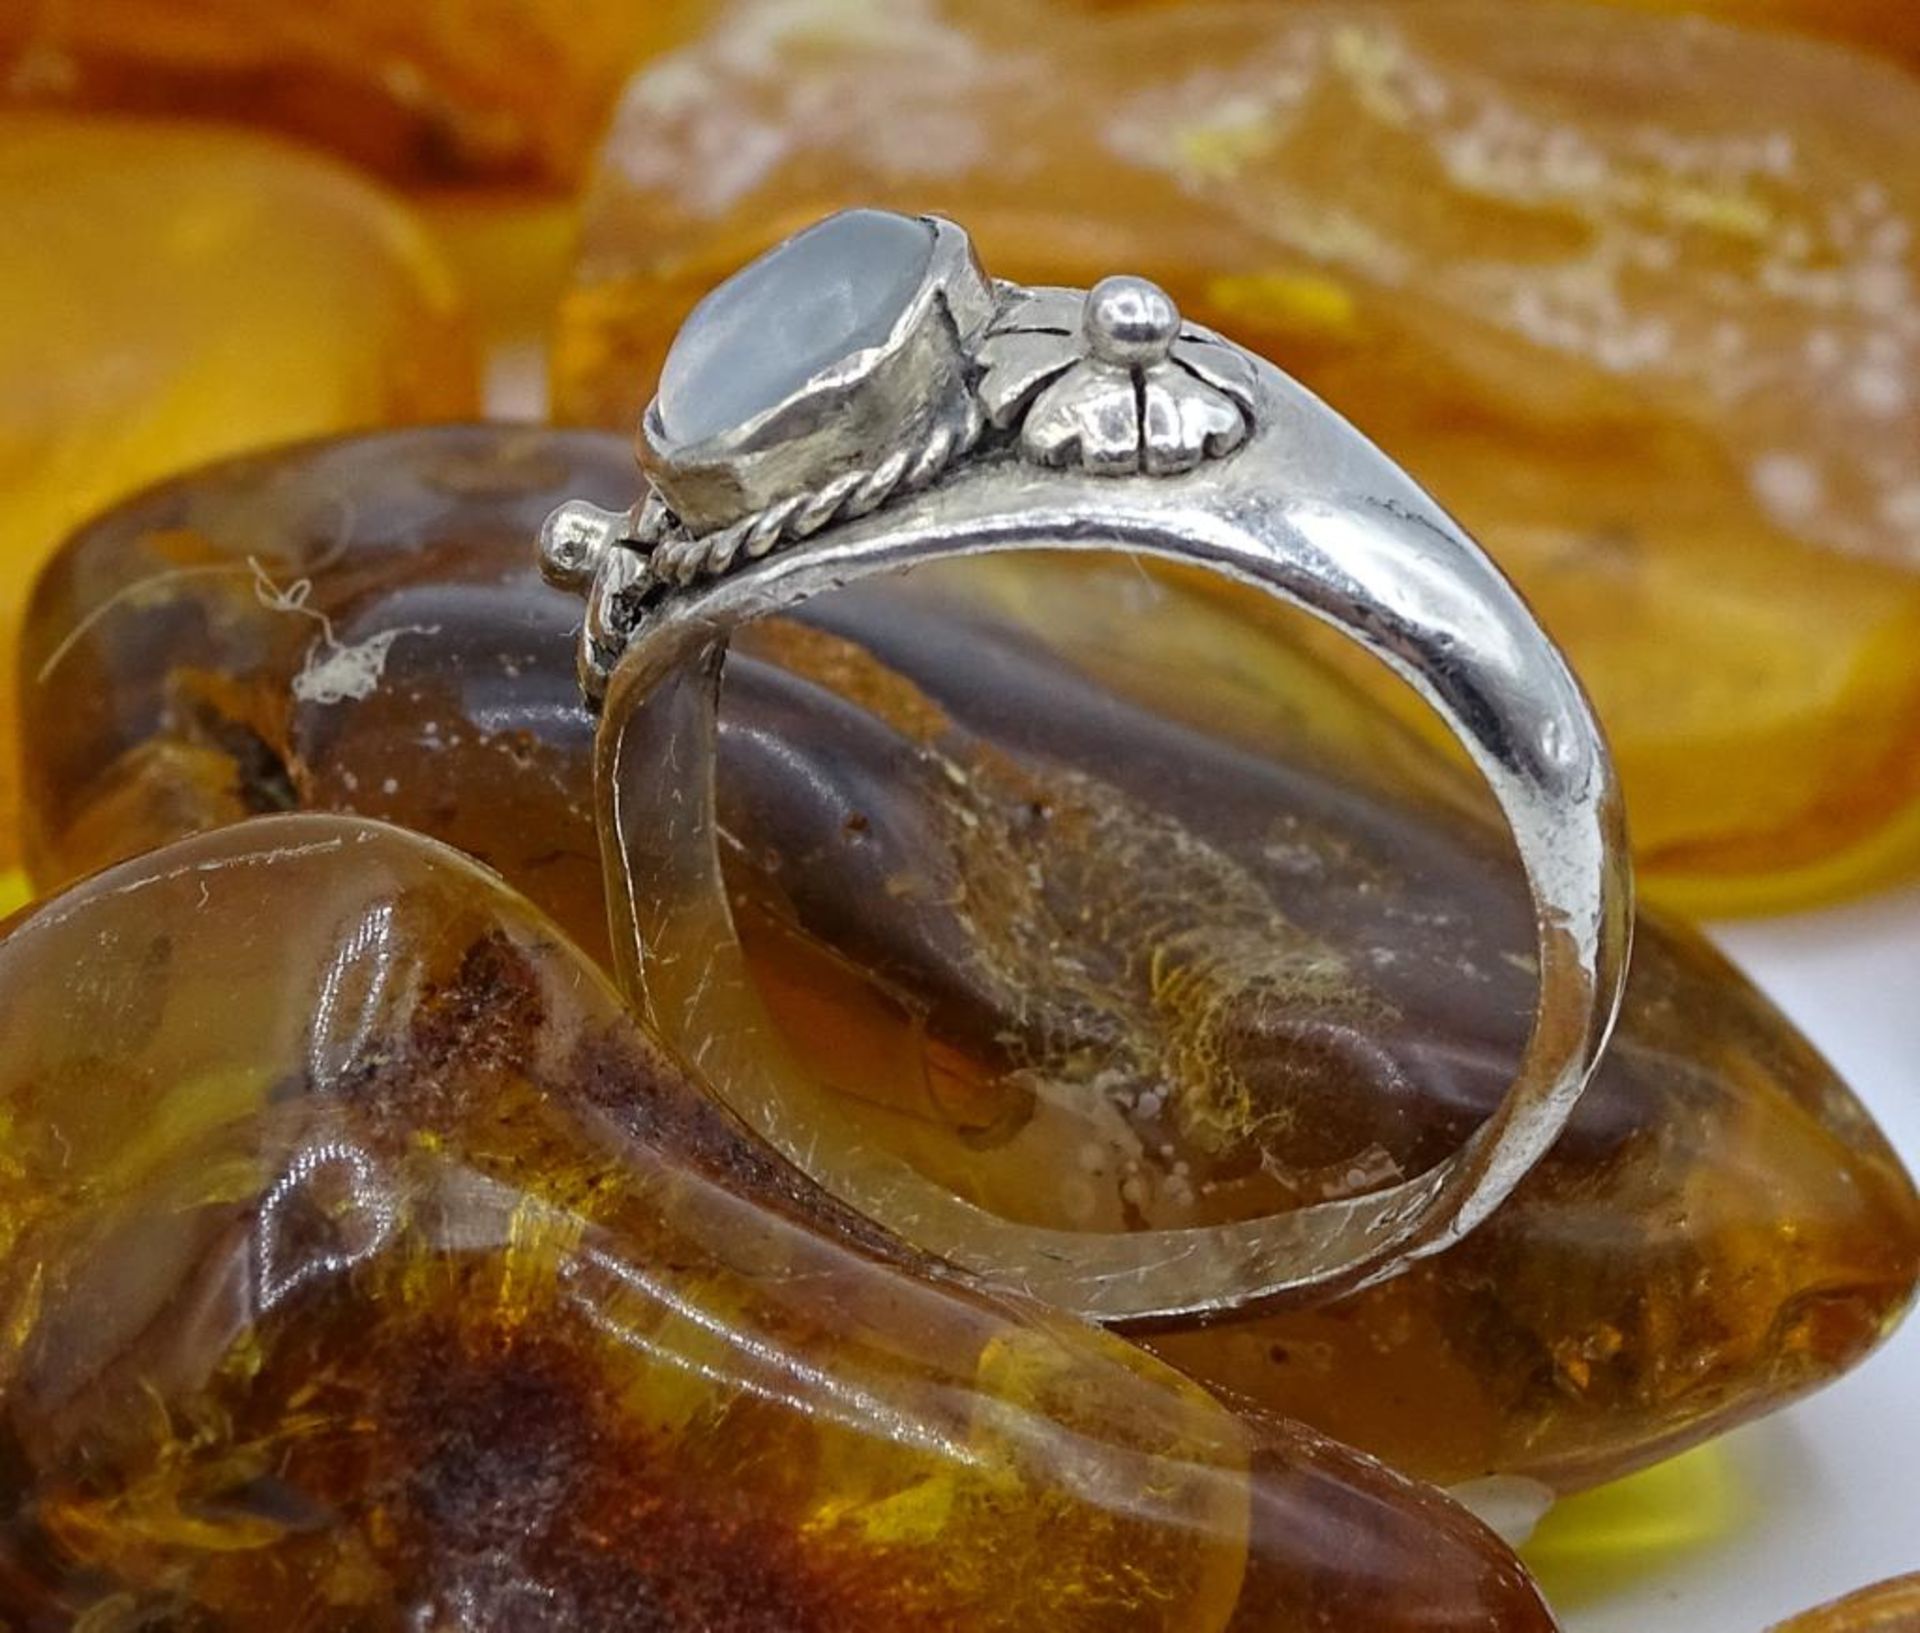 925er Silber Ring mit einem Mondstein Cabochon, 3,54gr., RG 54,Ringschiene etwas gedellt - Bild 3 aus 4